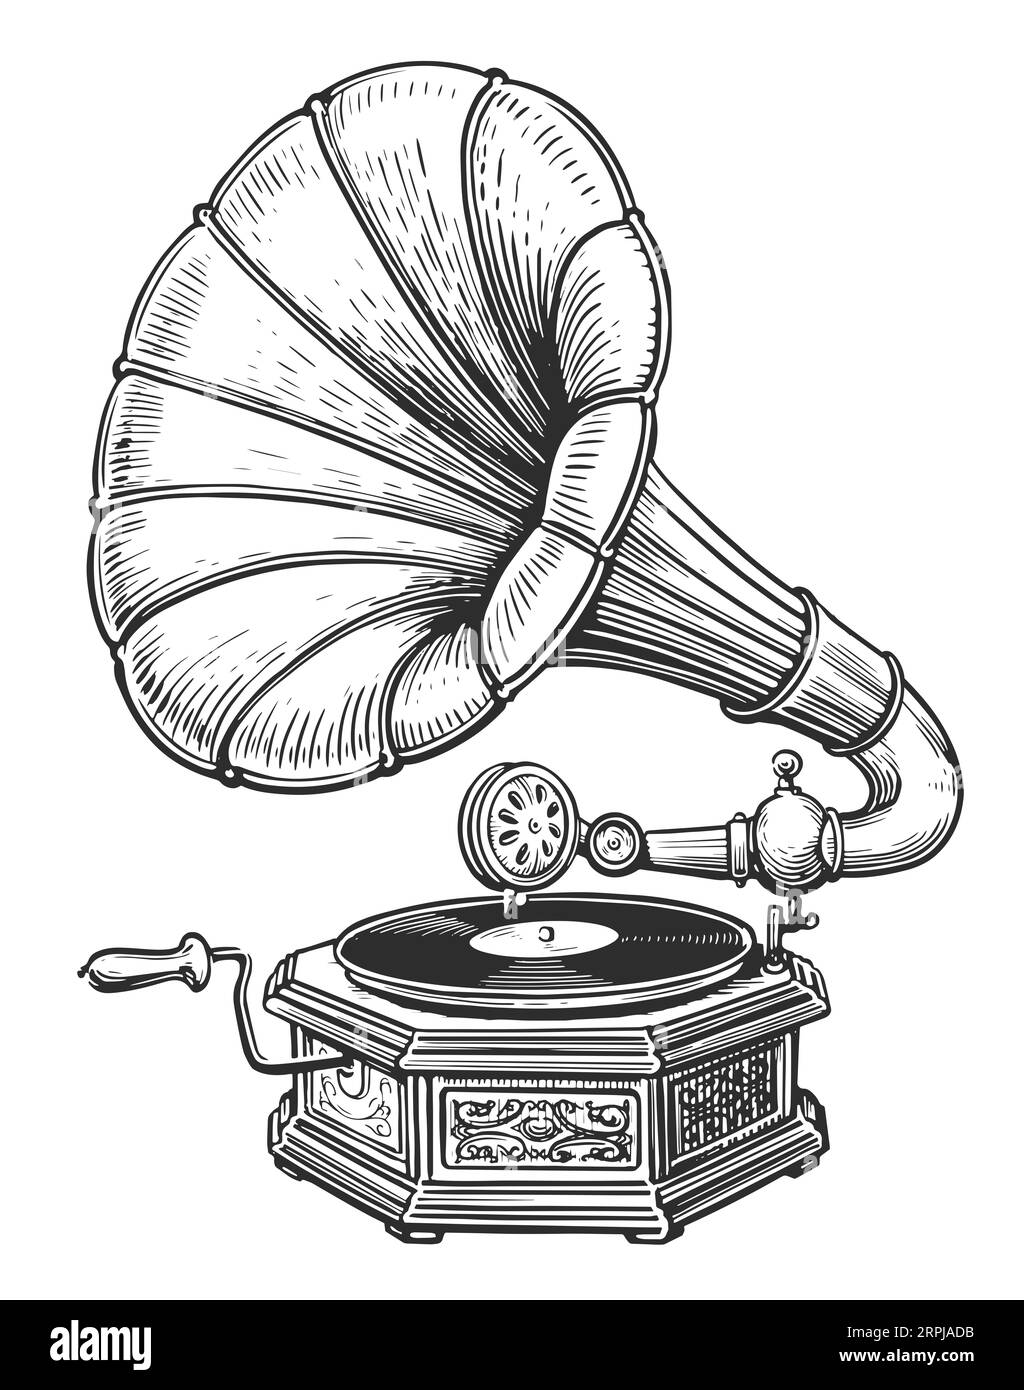 Style de gravure de gramophone vintage. Vieux tourne-disque avec disque vinyle. Illustration de croquis d'équipement musical rétro Banque D'Images